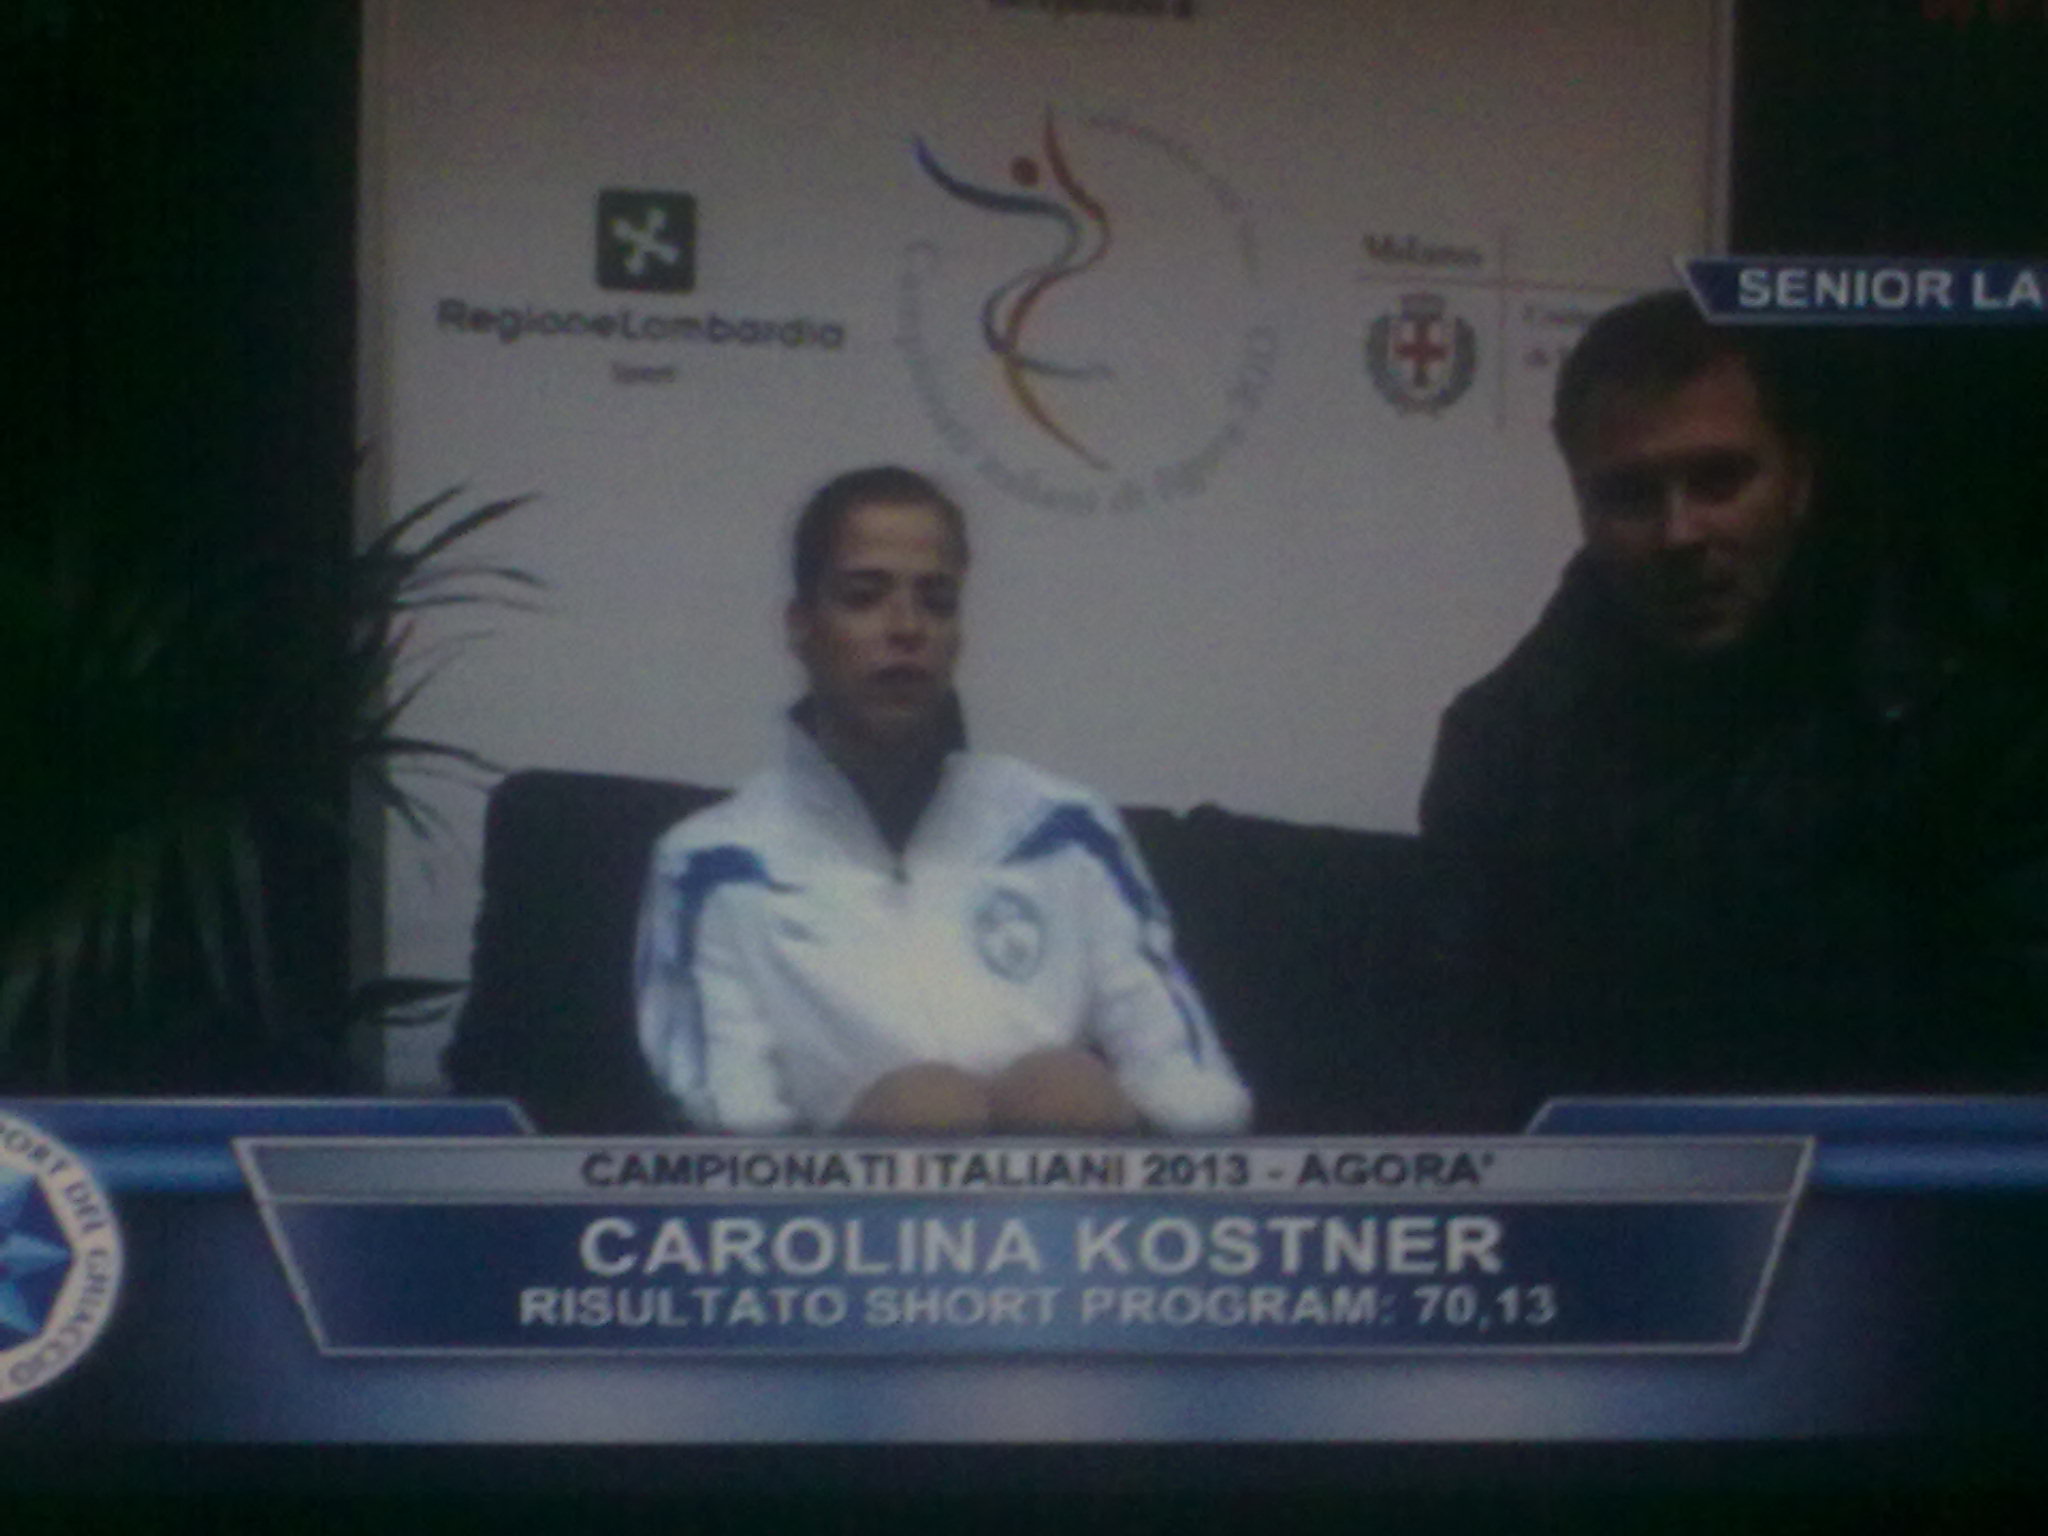 Carolina Kostner ai campionati italiani 2013 3Lz, 2A, 3F/2T/, 3Lo, 3T/2T, 3S/2T, 3S 143,56 punti!!!!